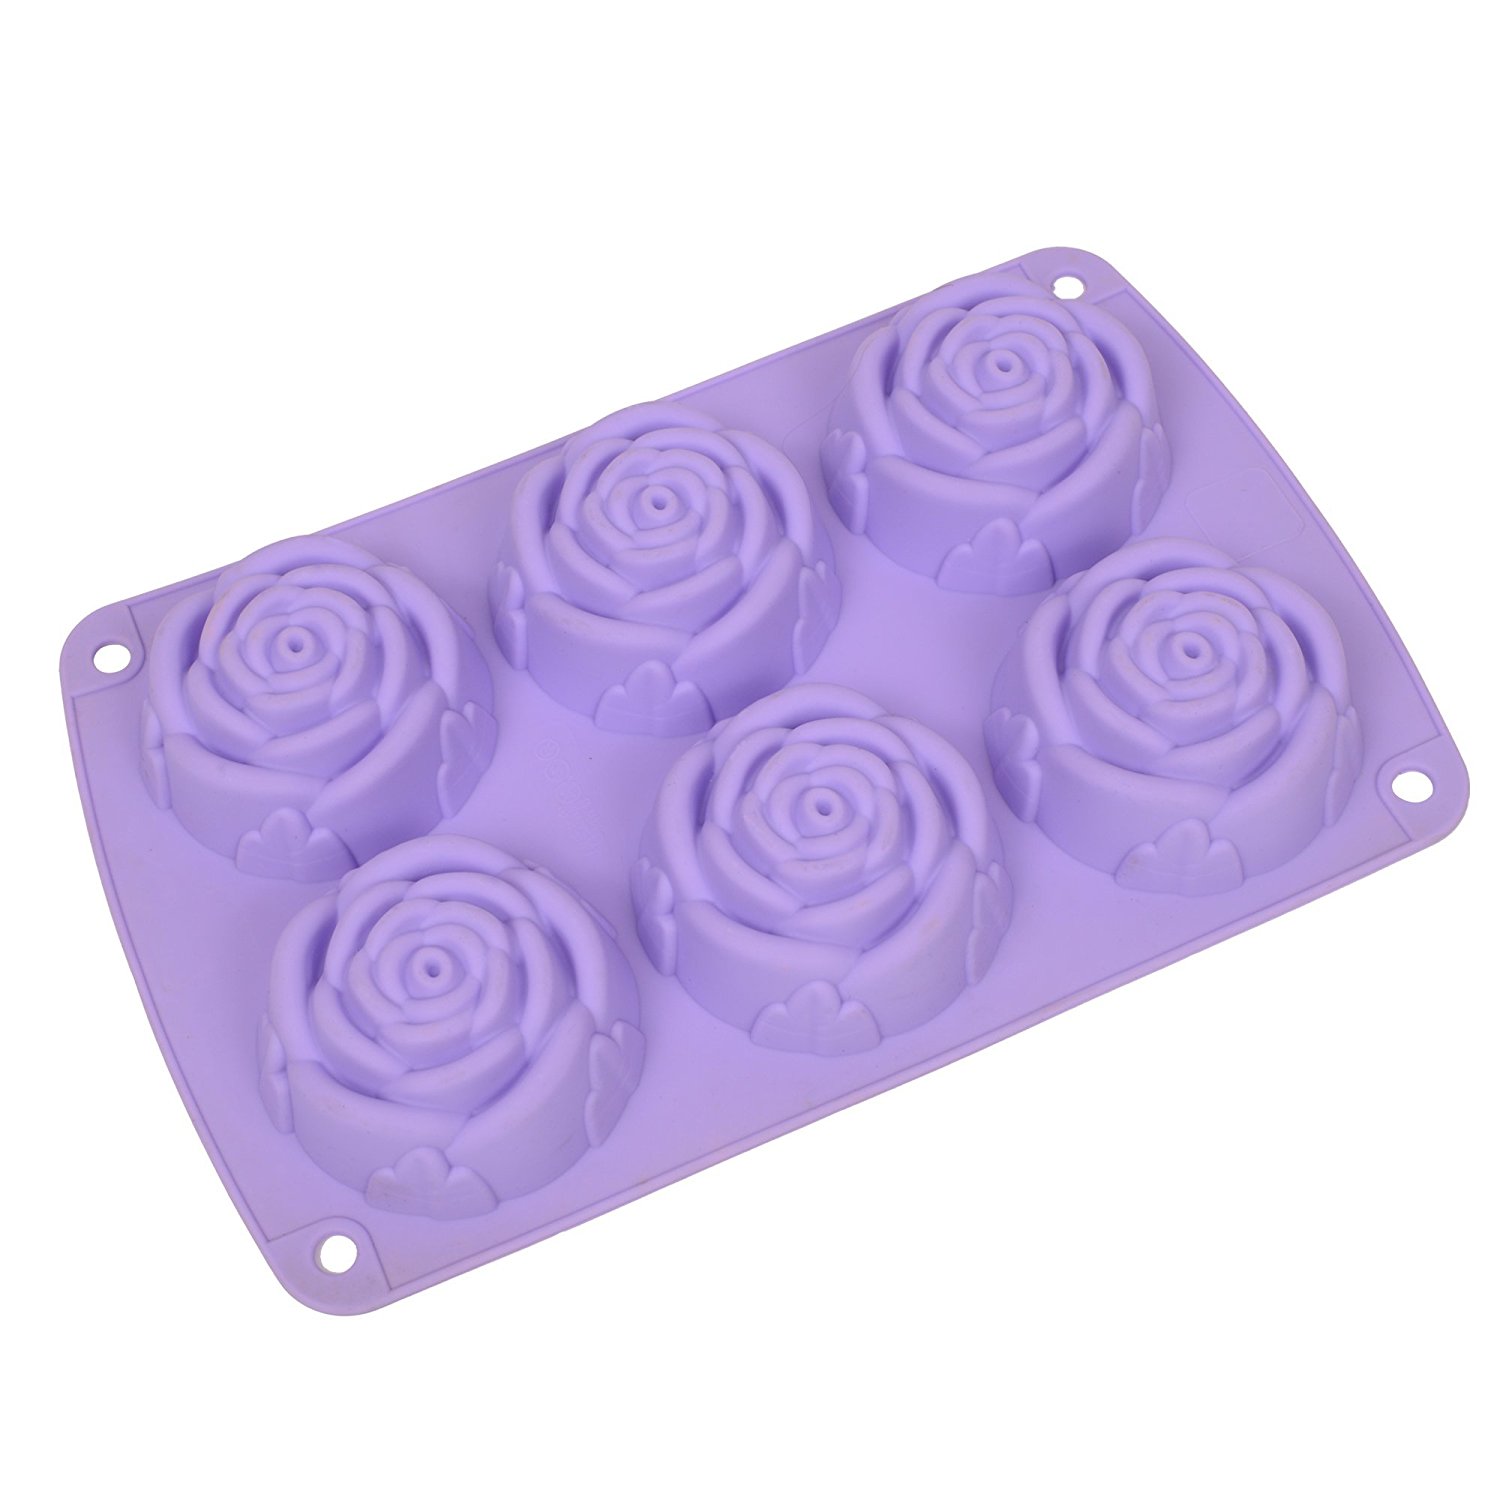 Webake 6 Cavity Rose Shape Silicone Cake Mold Soap Mold Bundt Cake Mold Purple 1pcs N11